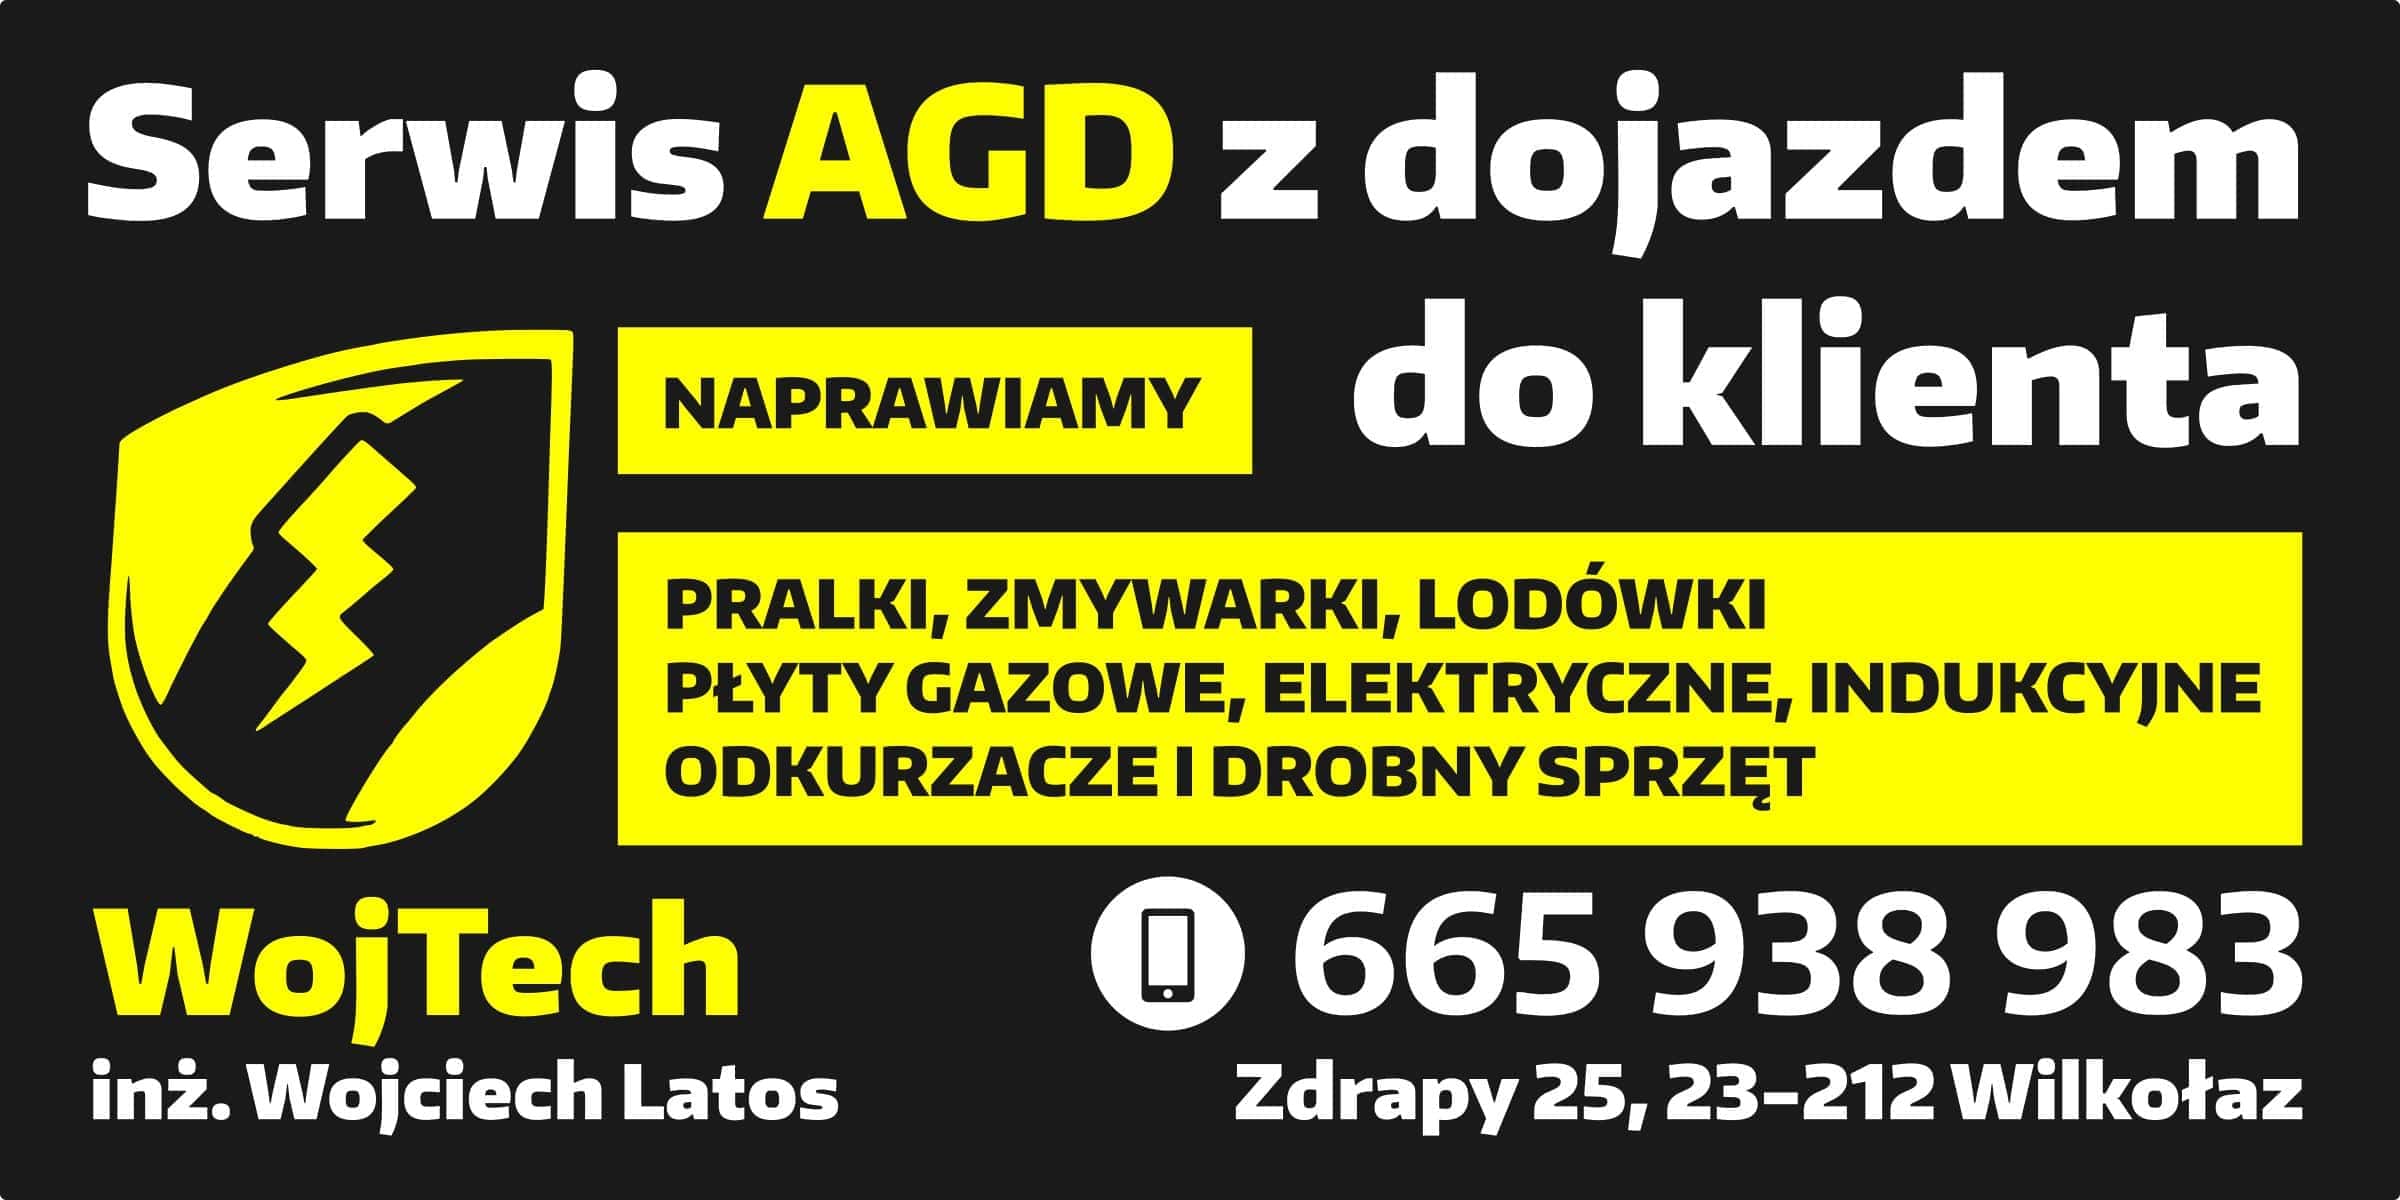 Naprawa AGD, Serwis - Kraśnik